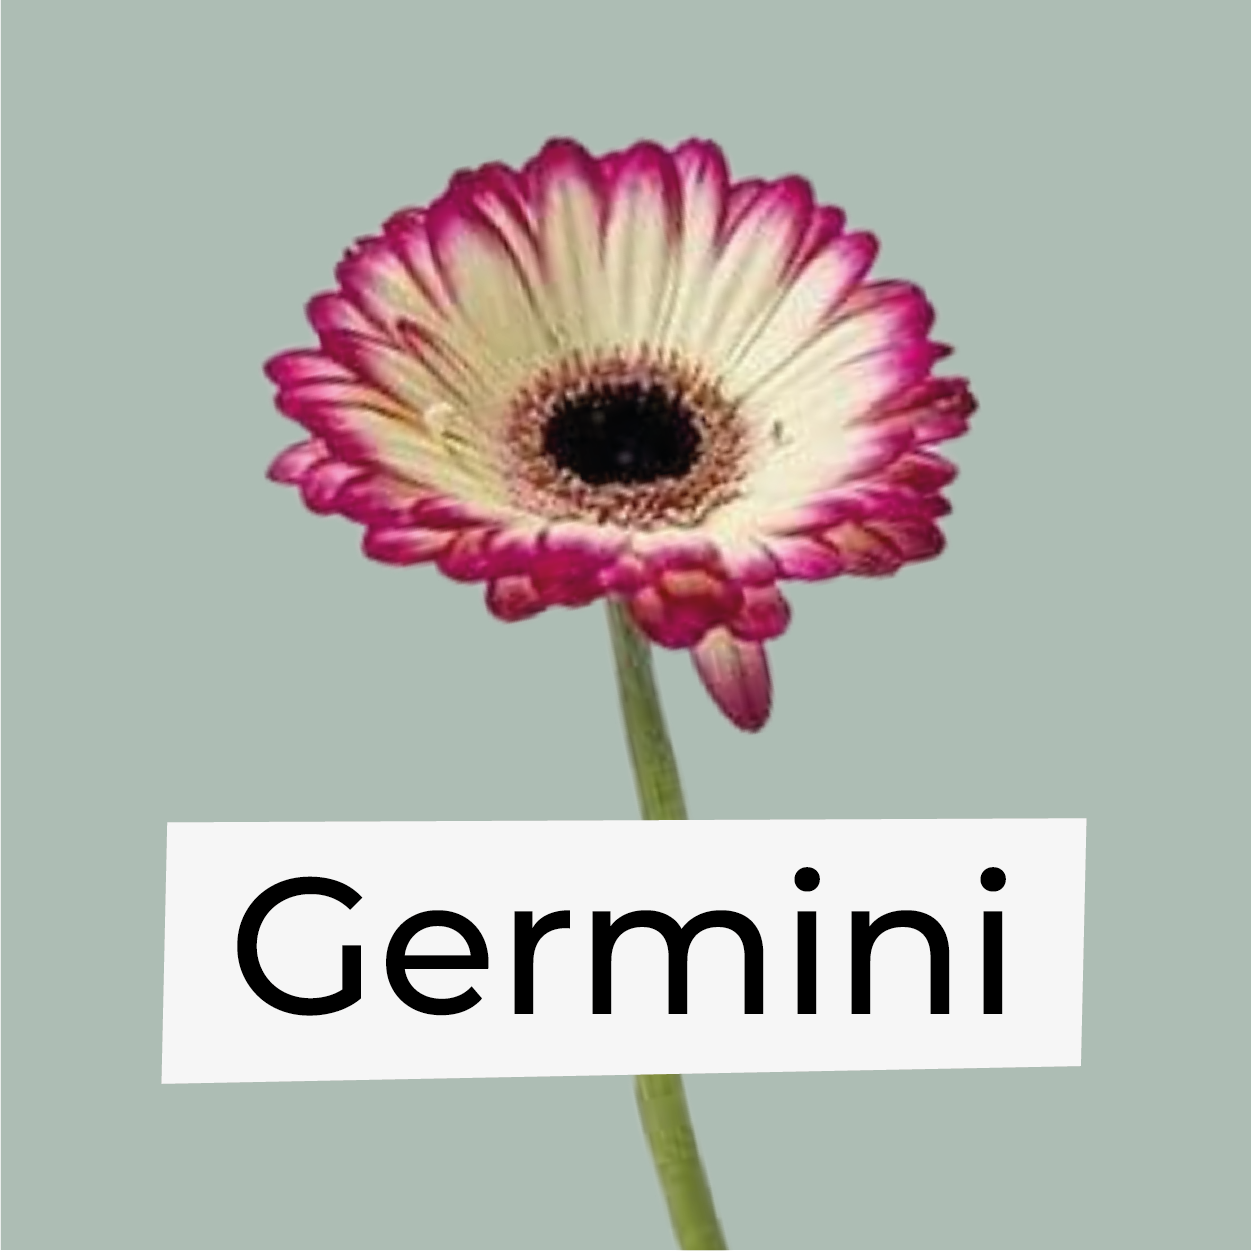 Germini